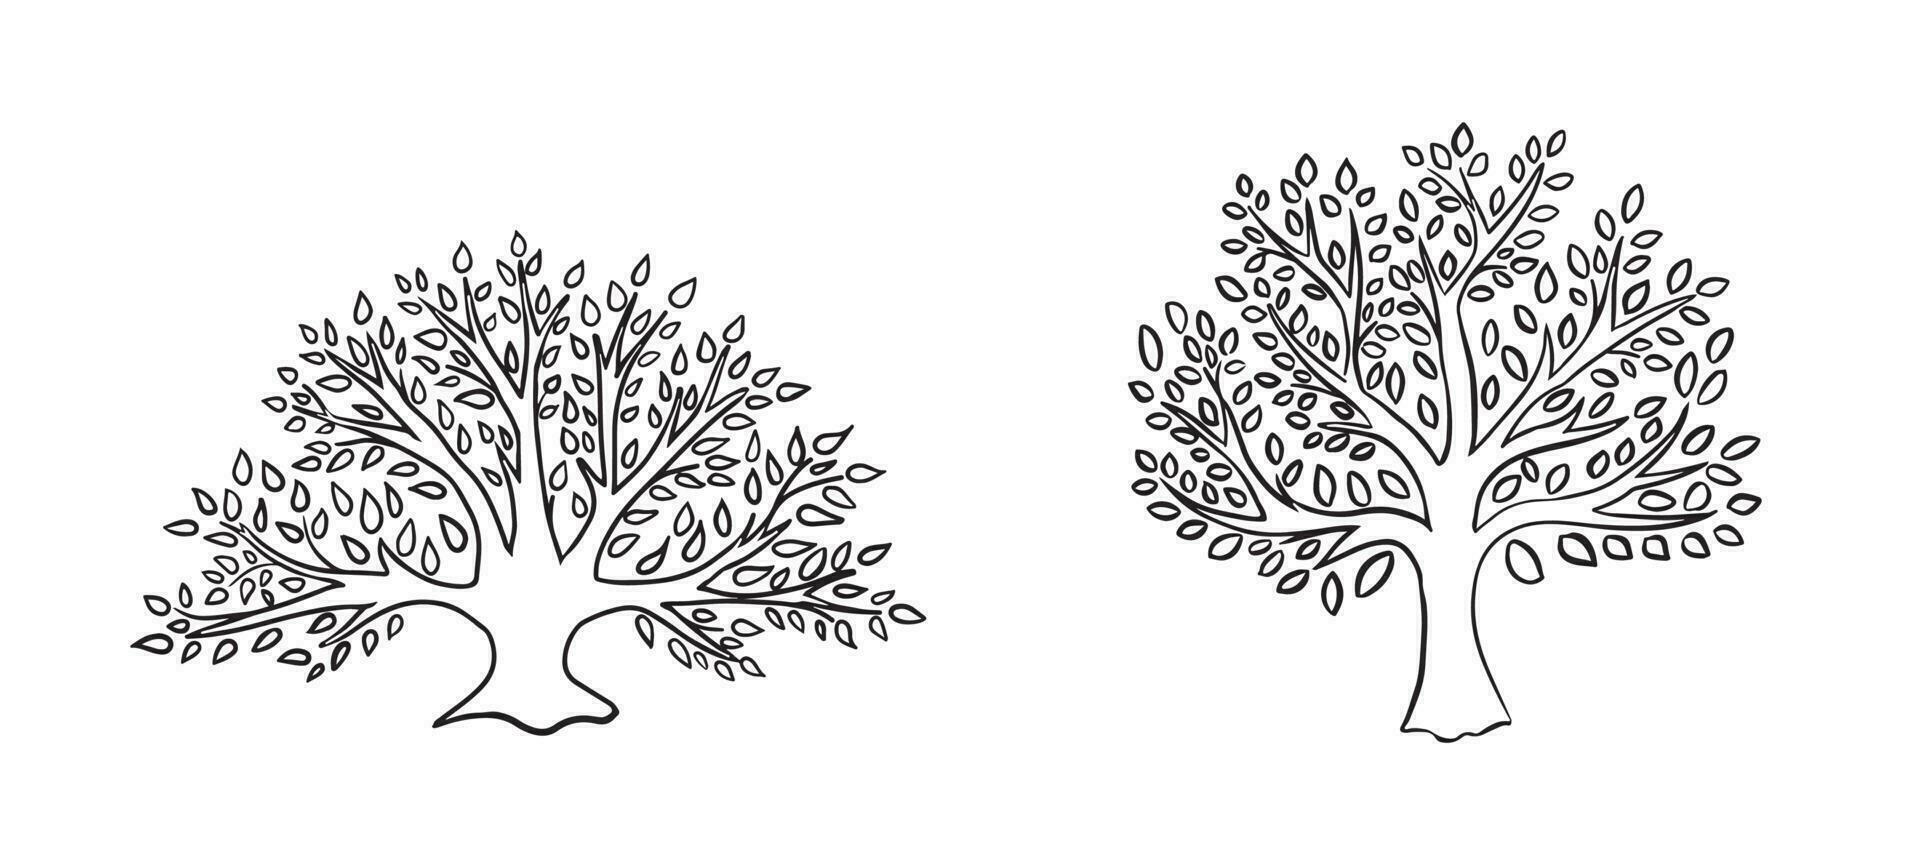 Baum von Leben kreativ Logo Vorlage, Vektor isoliert auf weiß.Vektor Baum Emblem. Symbol, logo.vektor Illustration von Baum mit Blätter.Hand made.logo zum Öko, Umwelt Themen, Landwirtschaft, Kosmetika.